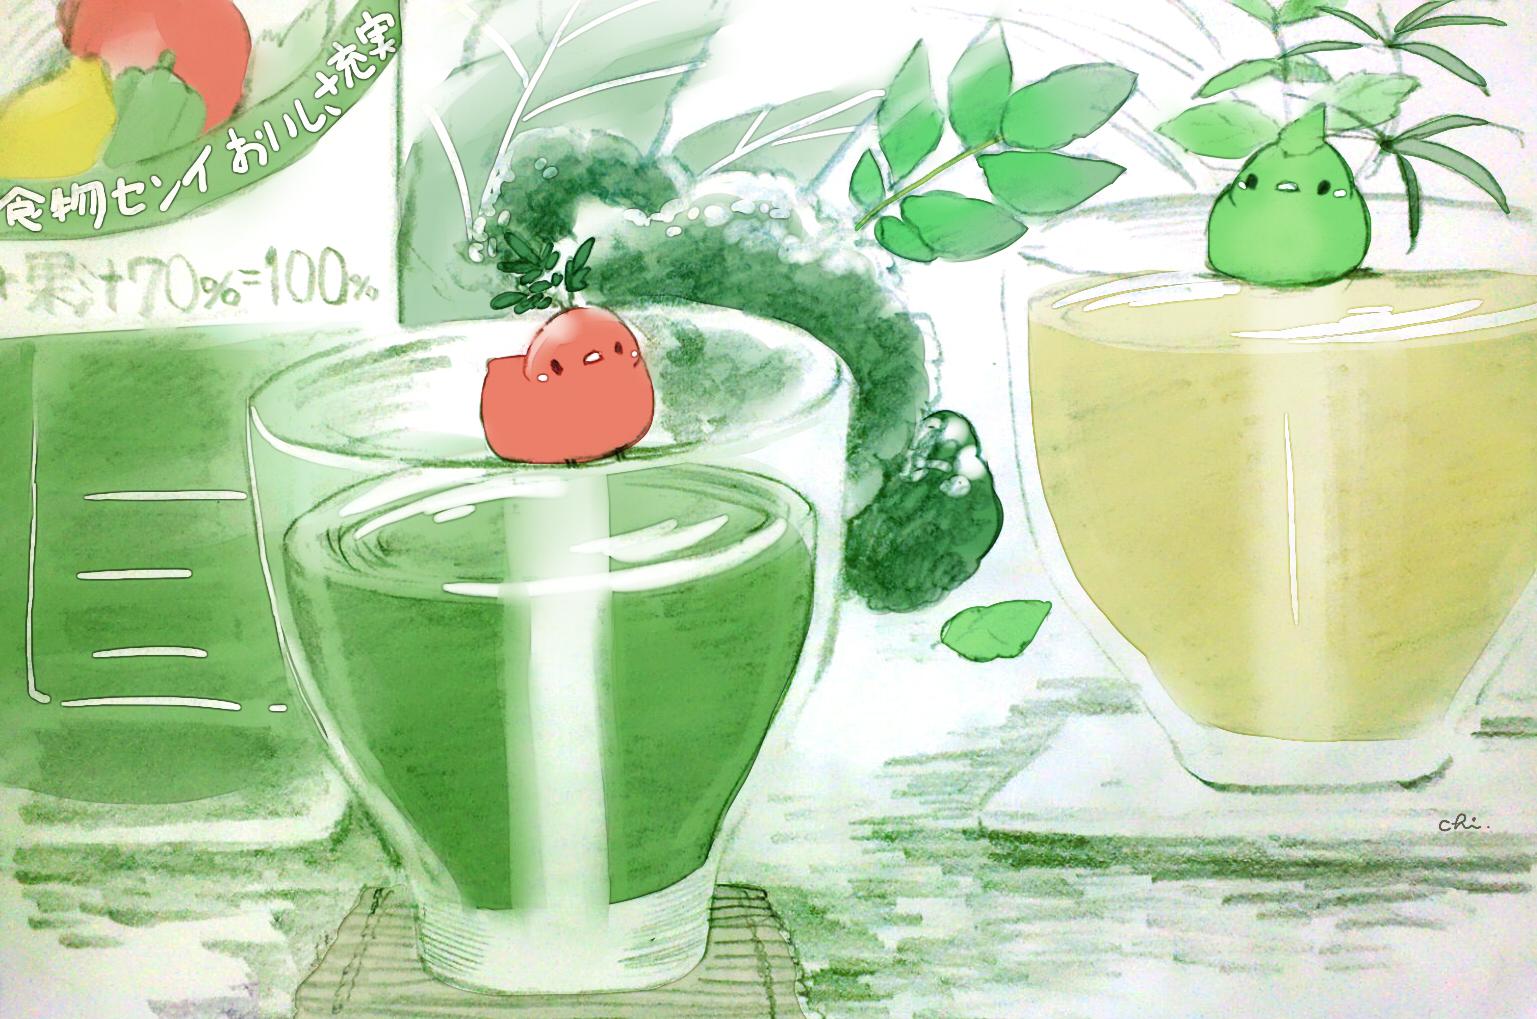 绿色蔬菜插画图片壁纸